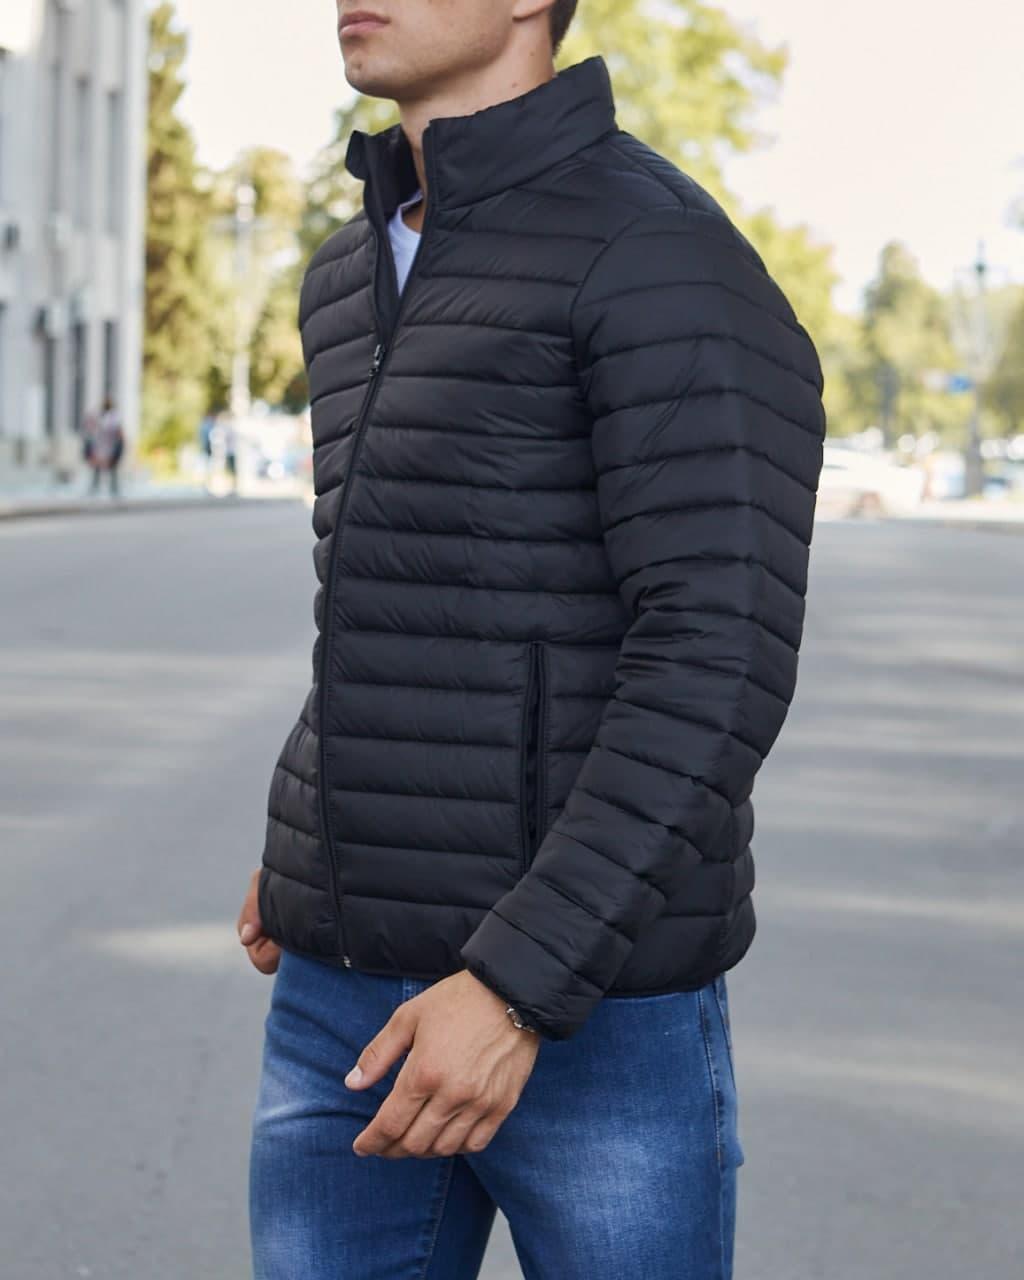 Весняна куртка стеганная чоловіча чорна бренд ТУР модель Класік - Фото 6